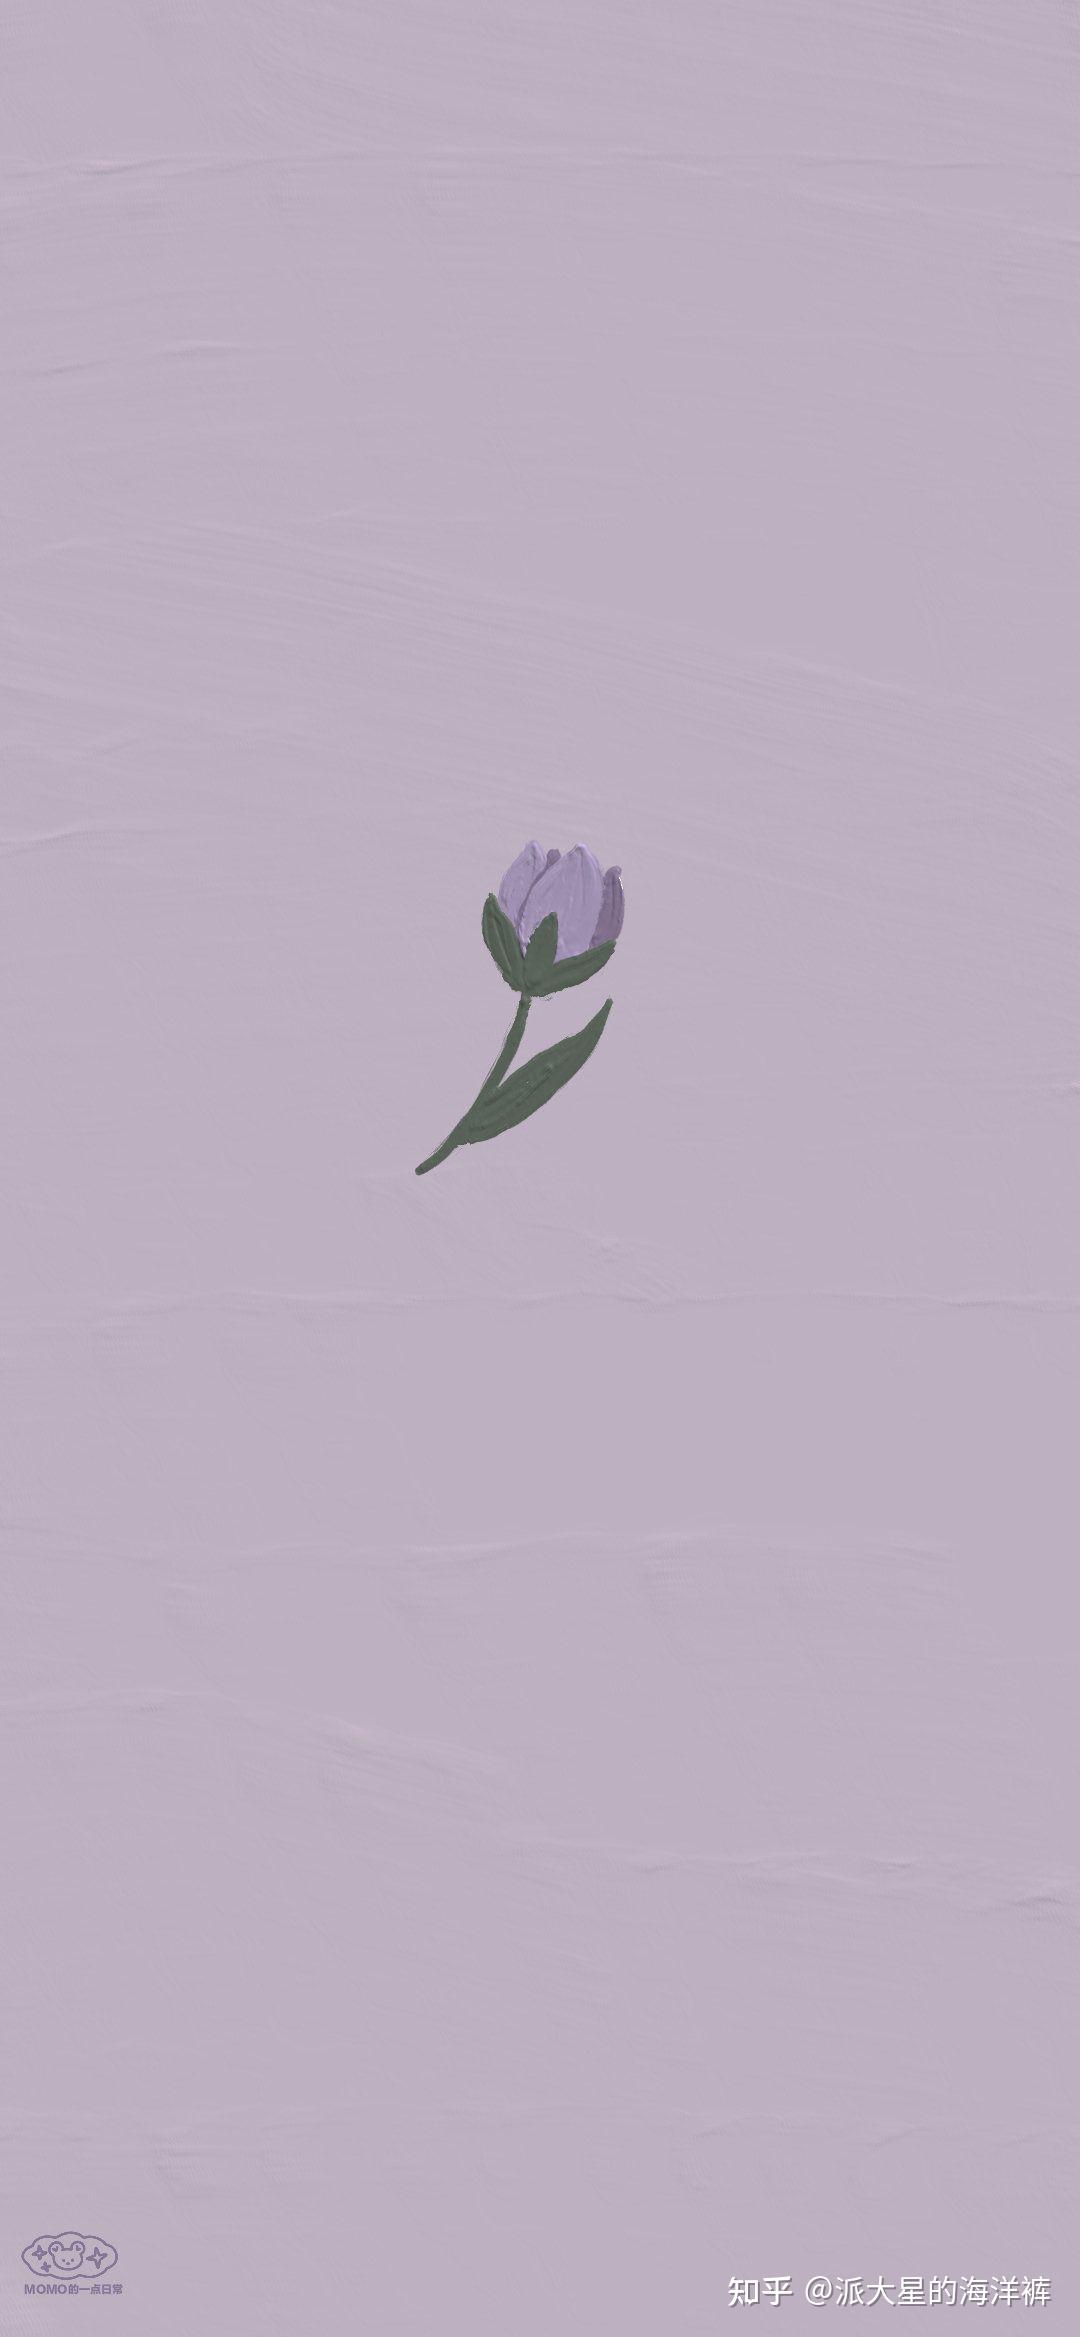 香芋紫壁纸90 